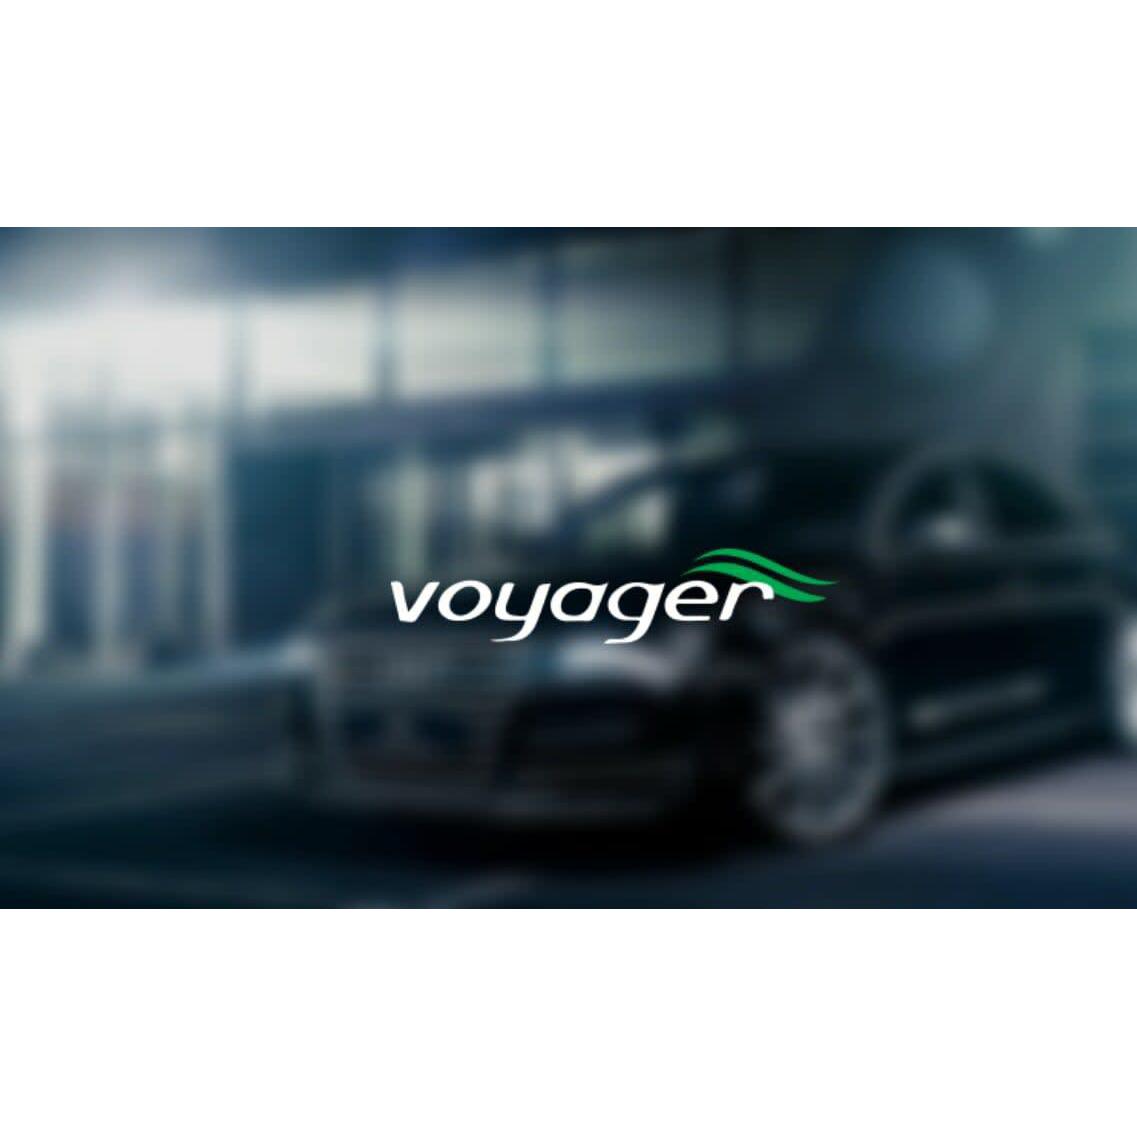 Voyager Executive Cars Ltd - Cambridge, Cambridgeshire CB22 5LD - 01223 245450 | ShowMeLocal.com